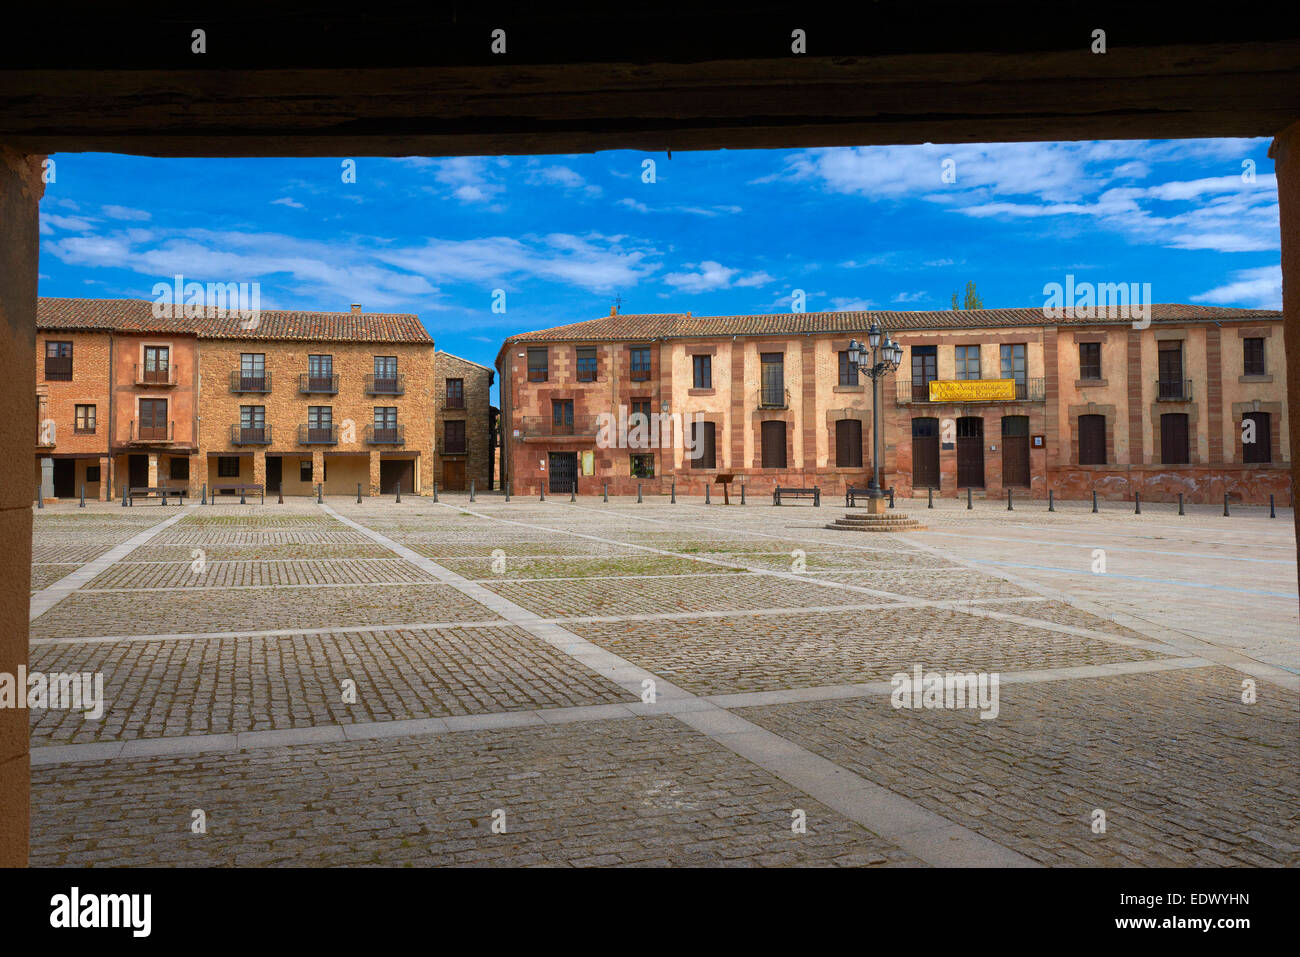 Medinaceli, Main Square, Soria province, Castilla Leon Stock Photo